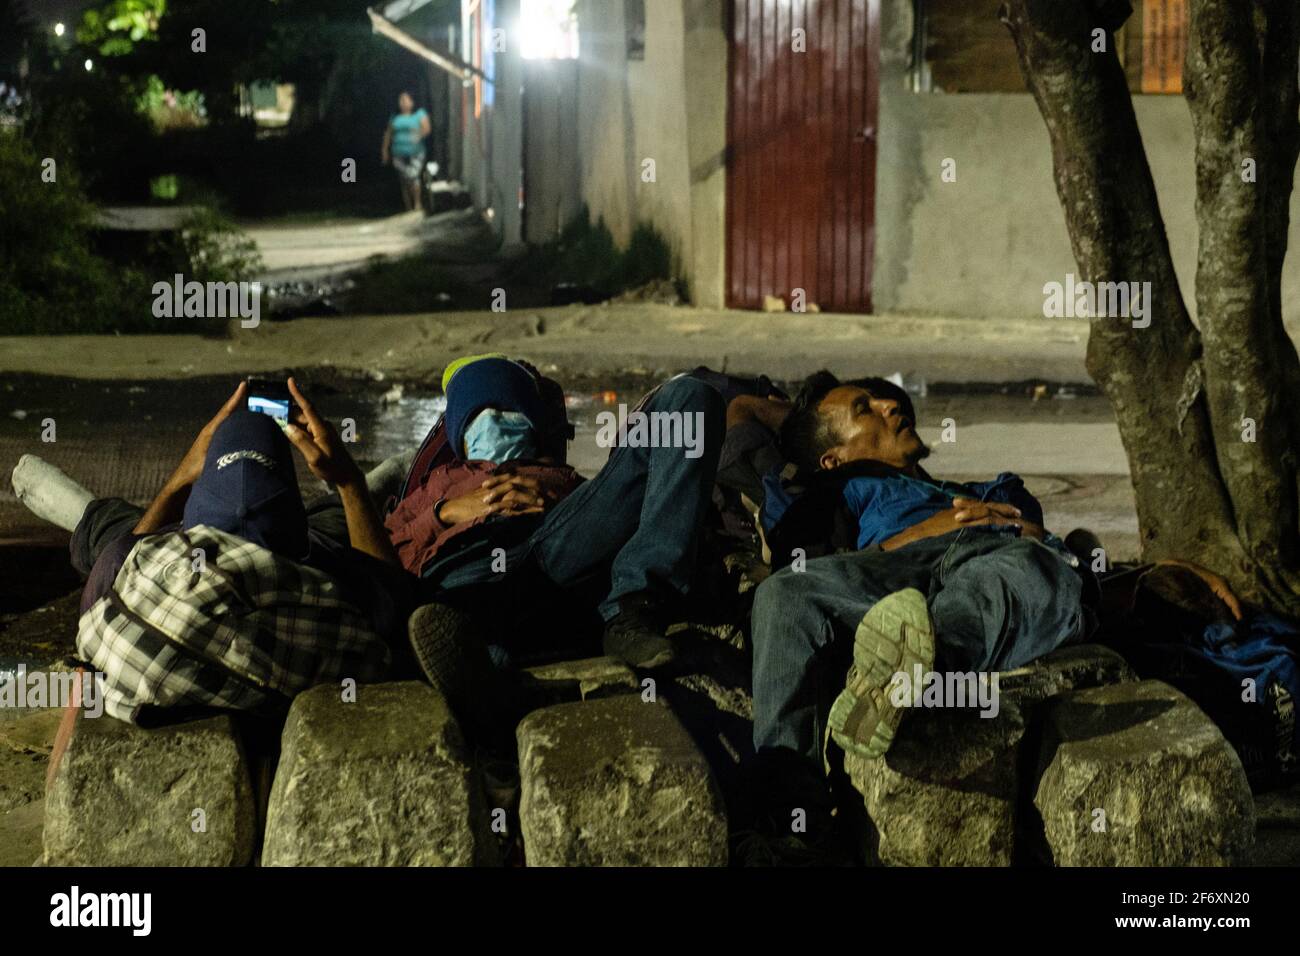 COATZACOALCOS, MEXIKO - 31. MÄRZ: Honduranische Migranten setzen ihre Reise auf den Eisenbahnschienen fort, auf der Suche nach einer Chance, in den Zug zu steigen und die US-Grenze erreichen zu können. Hunderte von Migranten nehmen an der Reise Teil, um die Vereinigten Staaten zu erreichen und nach amerikanischen Träumen zu suchen. Am 31. März 2021 in Coatzacoalcos, Mexiko. (Foto von Eyepix/Sipa USA) Stockfoto